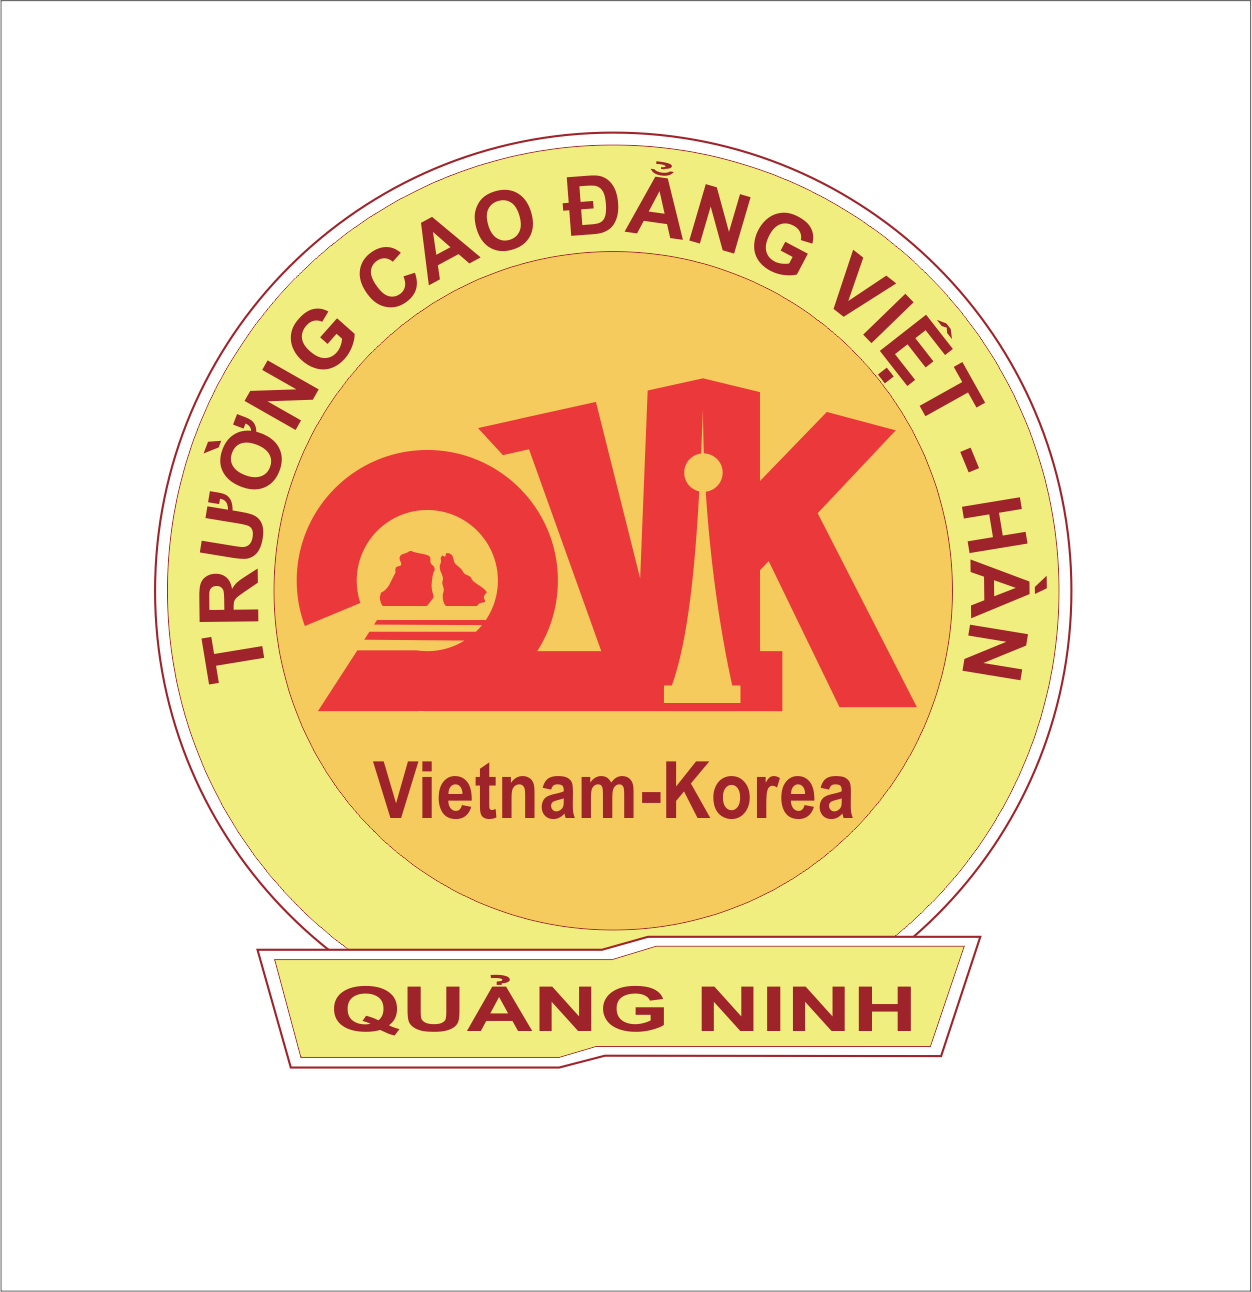 Trường Cao đẳng Việt Hàn Quảng Ninh thông báo tuyển sinh các nghề trọng  điểm, các nghề miễn phí học phí có việc làm ngay